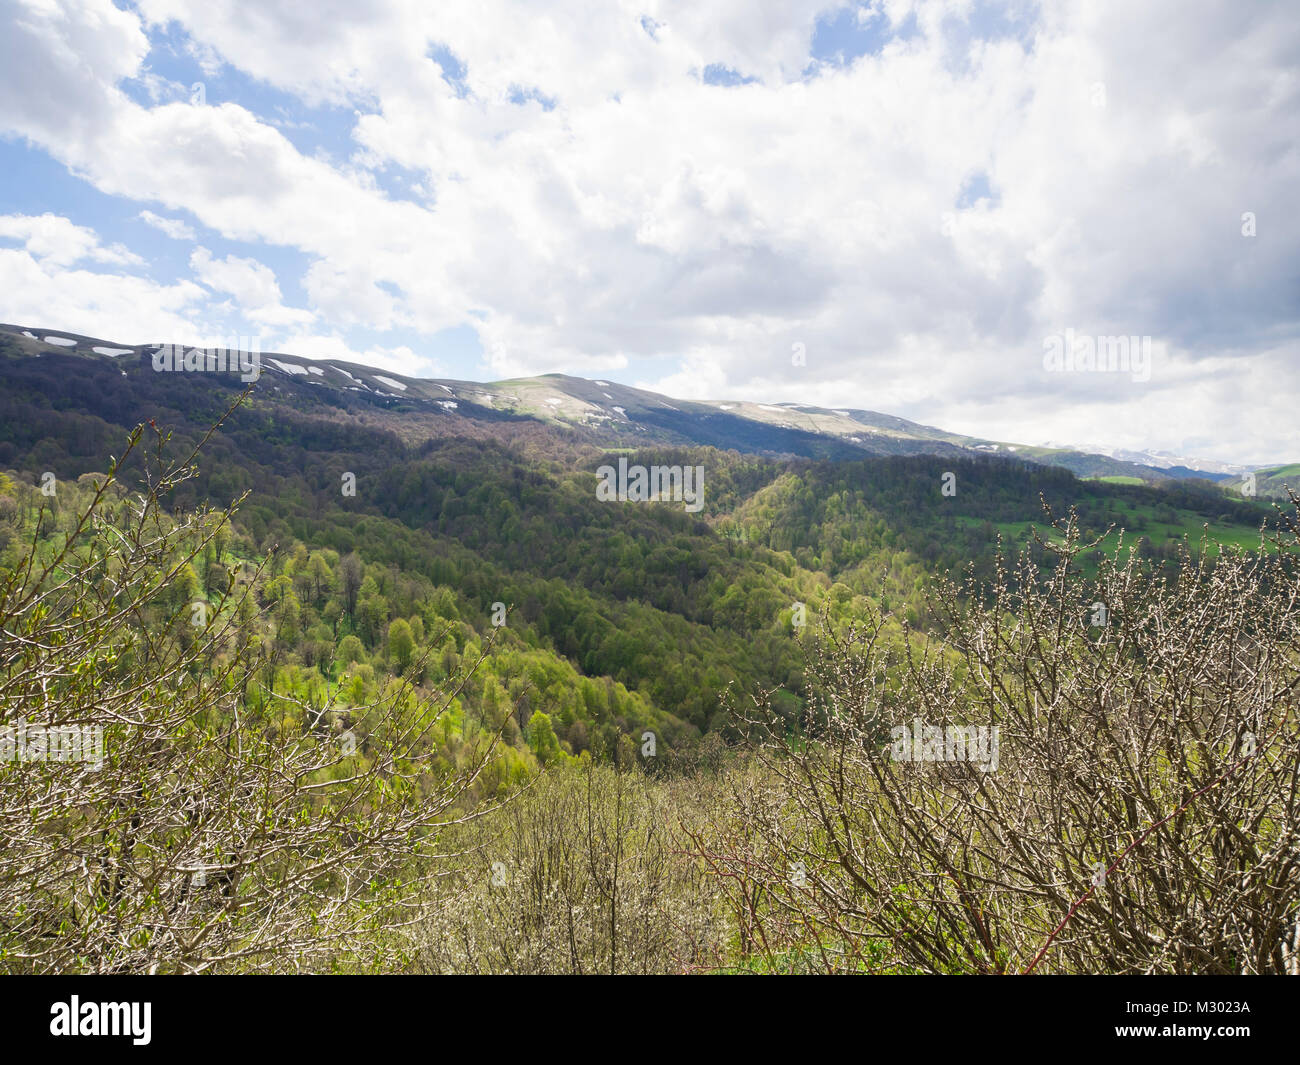 Le printemps à et autour de l'Arménie dans le Parc National de Dilijan une zone appréciée par les randonneurs, une variété d'arbres à feuilles caduques dans différents verts Banque D'Images